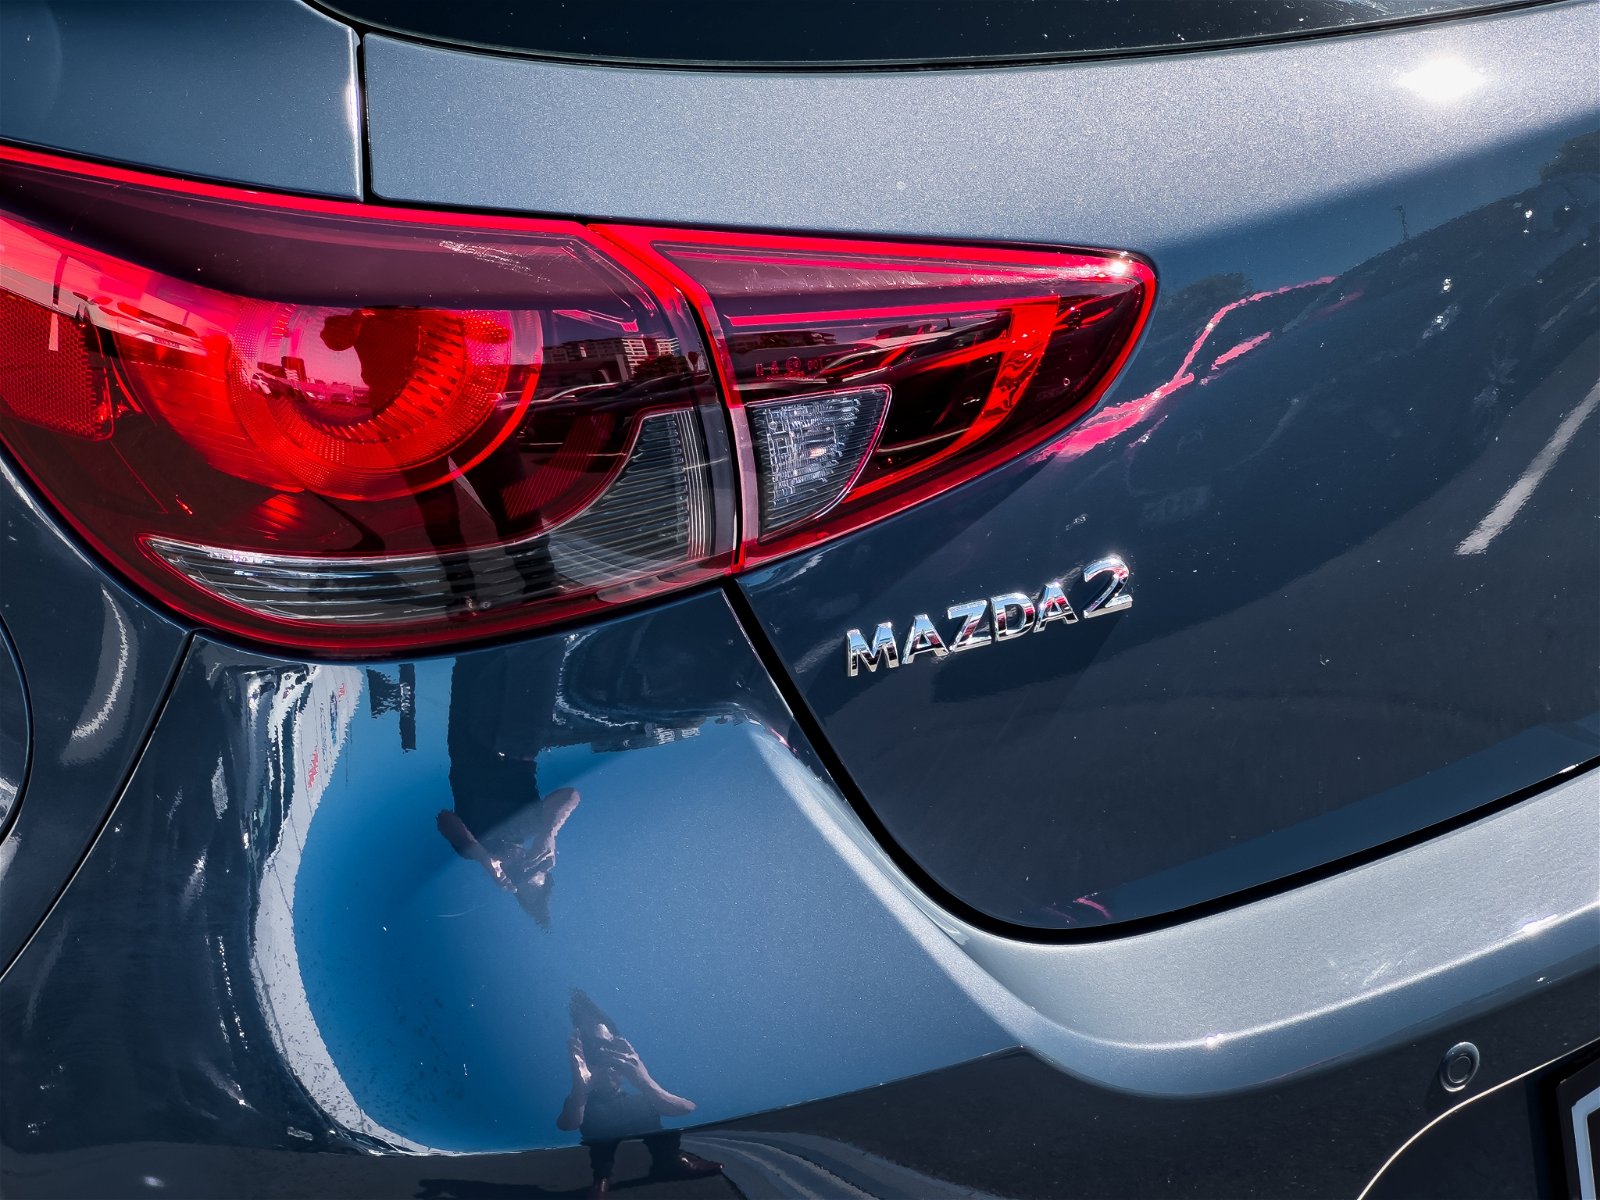 2022 Mazda 2 Ltd 1.5P/6At